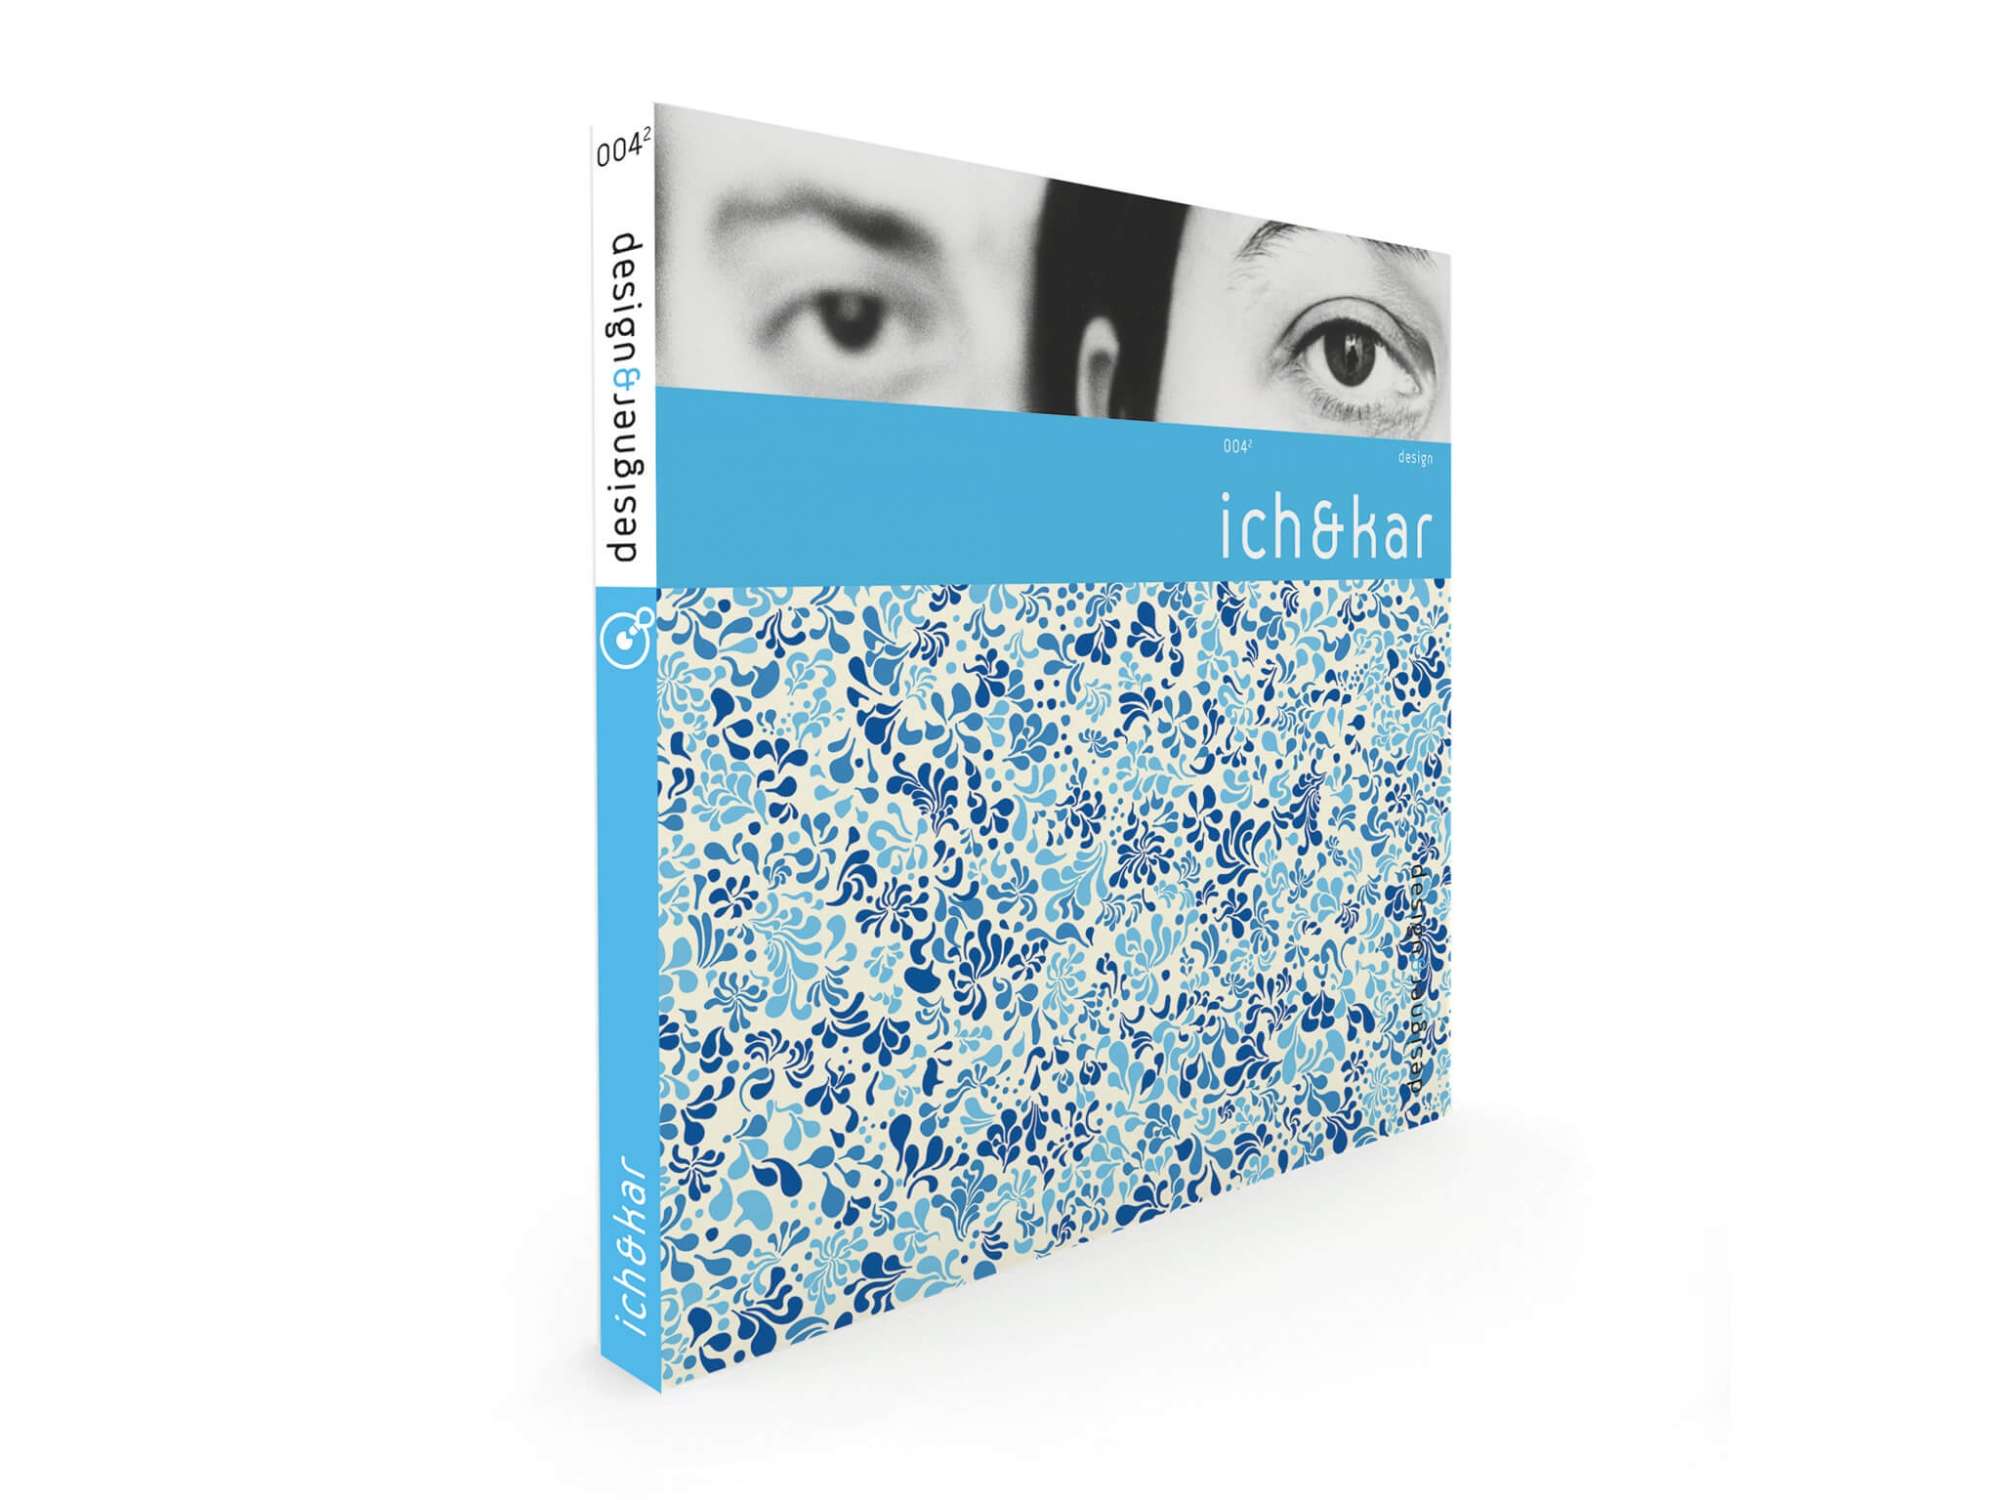 Couverture du livre ichetkar designs chez les éditions design et designer.